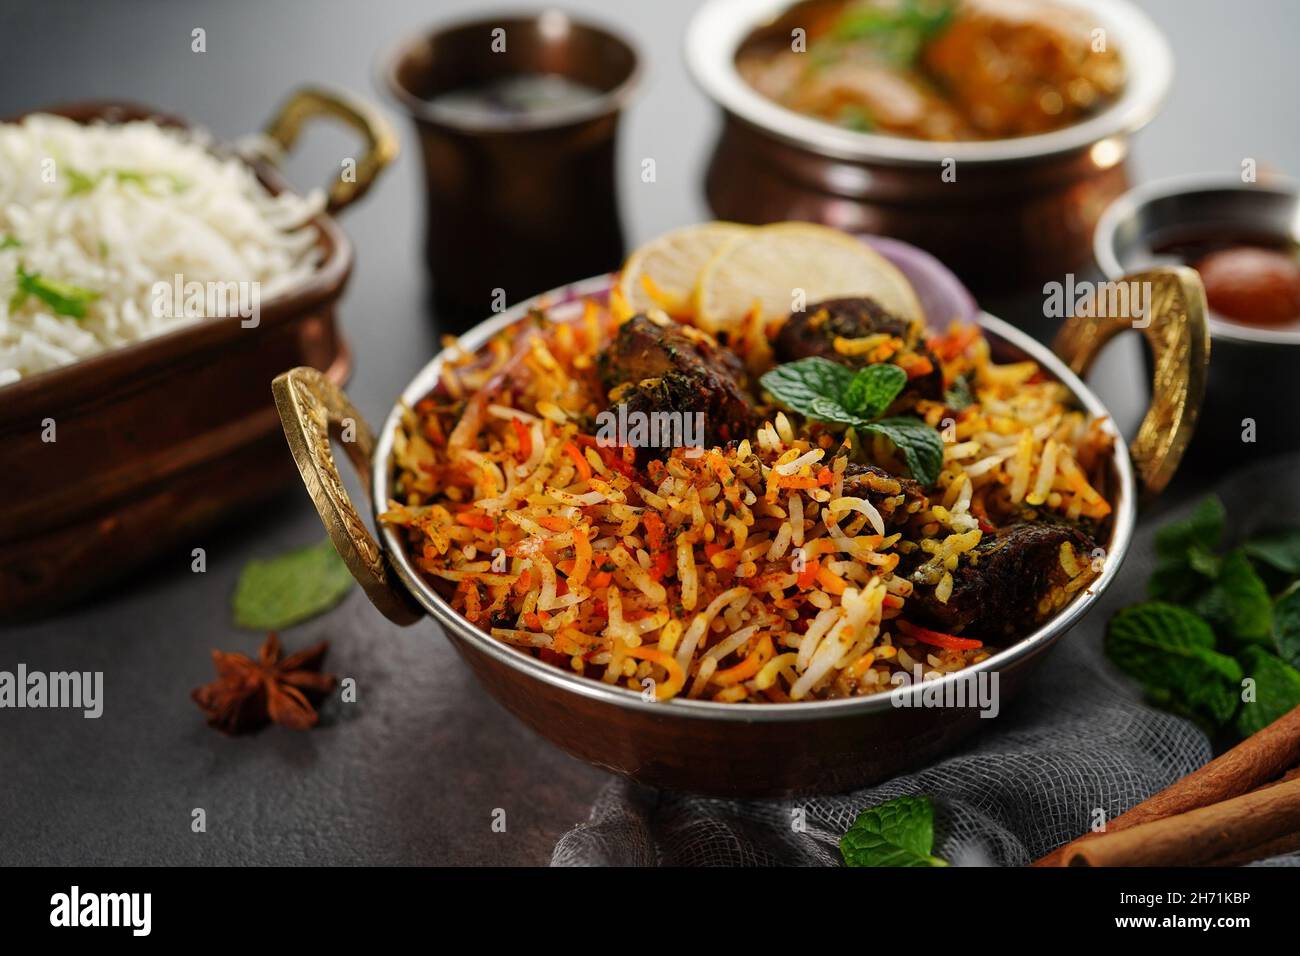 Repas de légumes indiens non-légumes thali - Mutton biryani, raita, kafta de malai, riz basmati et jamun de goulab,mise au point sélective Banque D'Images